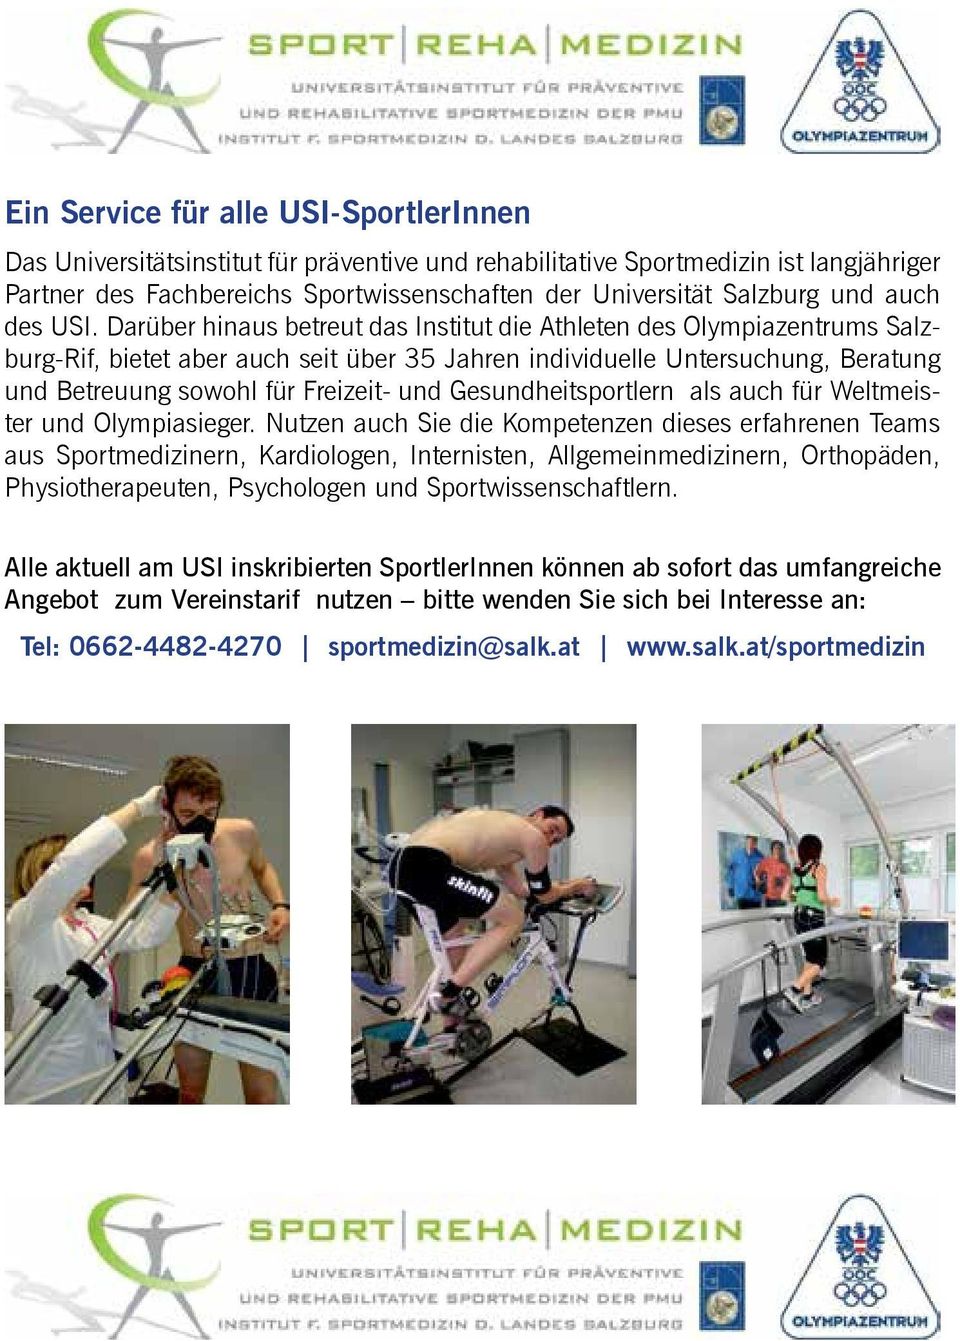 Darüber hinaus betreut das Institut die Athleten des Olympiazentrums Salzburg-Rif, bietet aber auch seit über 35 Jahren individuelle Untersuchung, Beratung und Betreuung sowohl für Freizeit- und